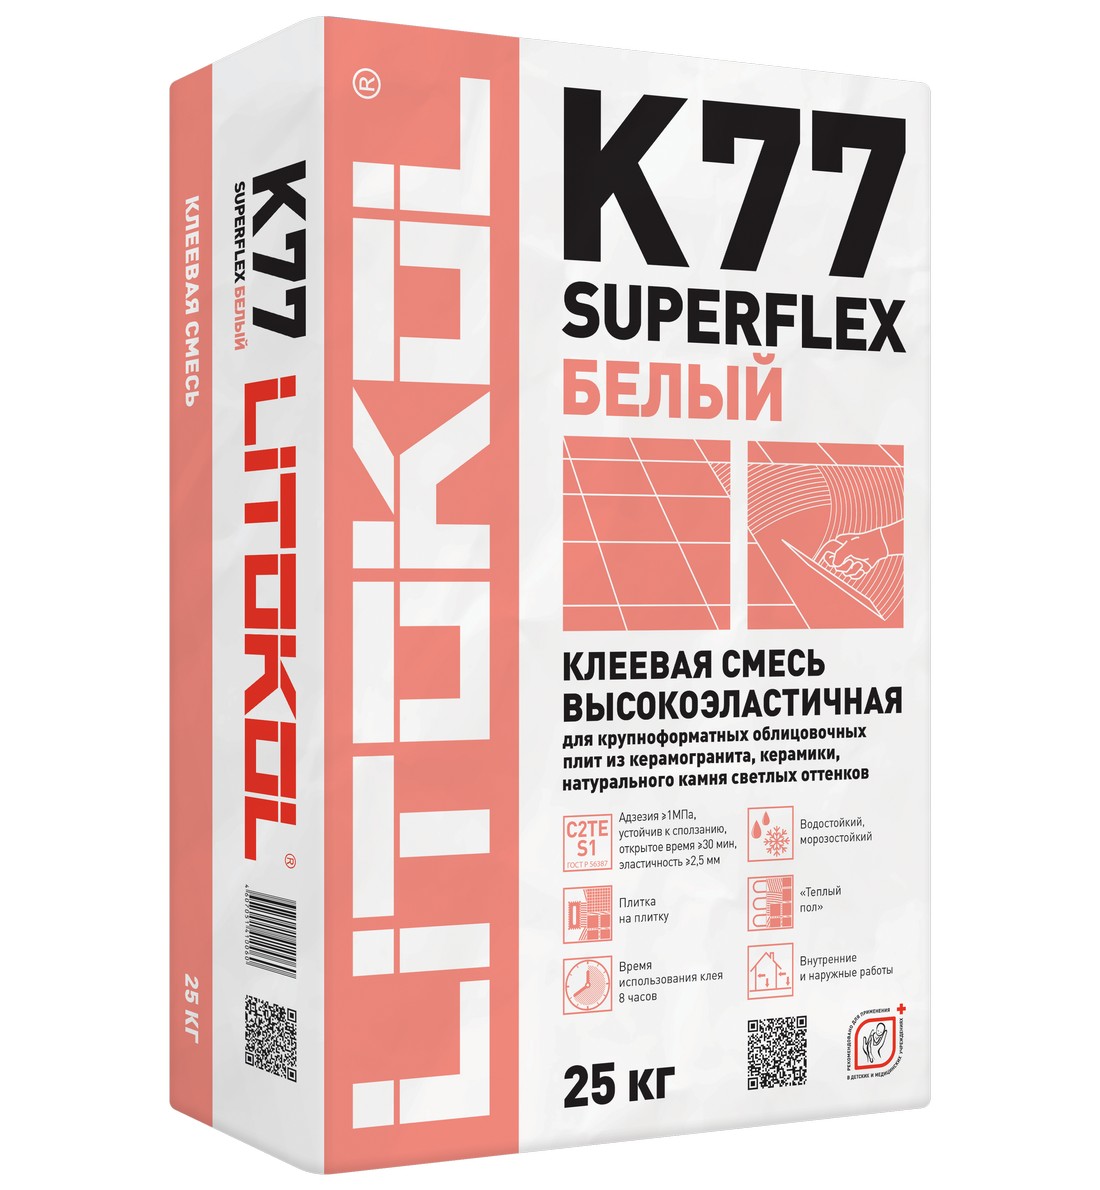 Клей для плитки Litokol SUPERFLEX K77 БЕЛЫЙ (мешок 25 кг) 484960002 ПОД ЗАКАЗ 